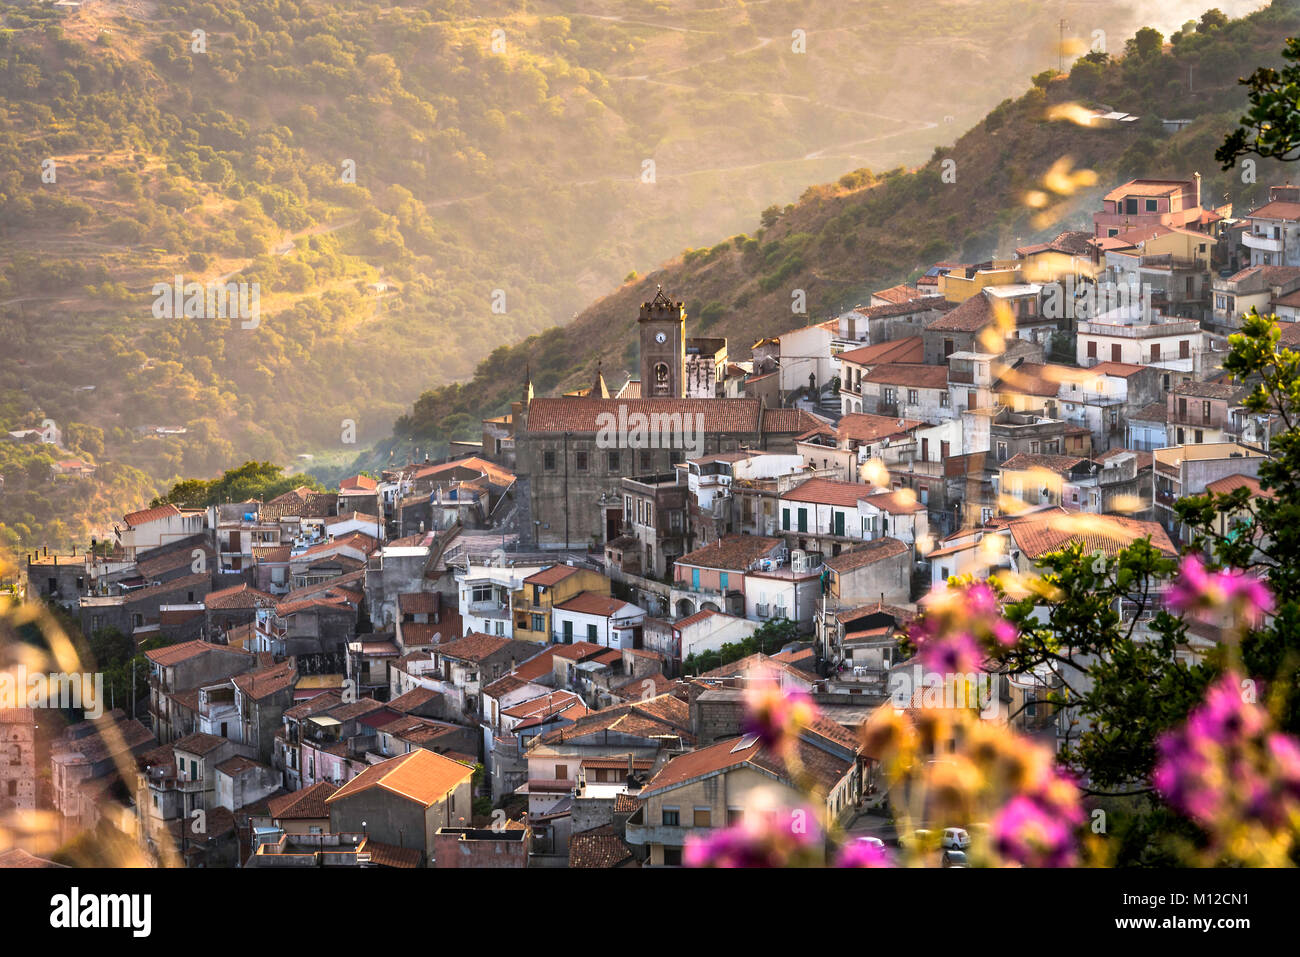 Casalvecchio Siculo - einem kleinen sizilianischen Dorf auf einem Hügel in der Provinz Messina gelegen Stockfoto